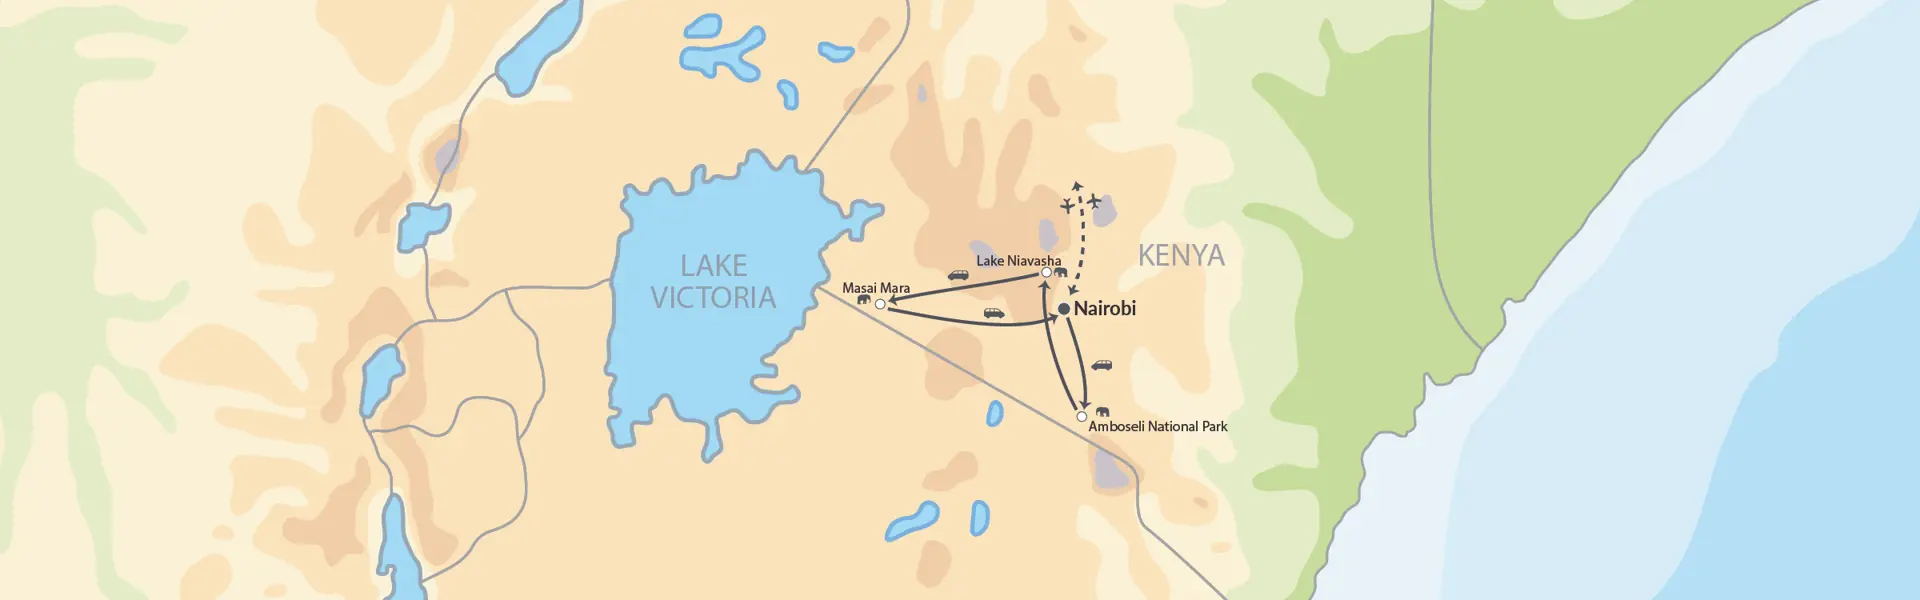 7009 Kili Kenya Safari (2)